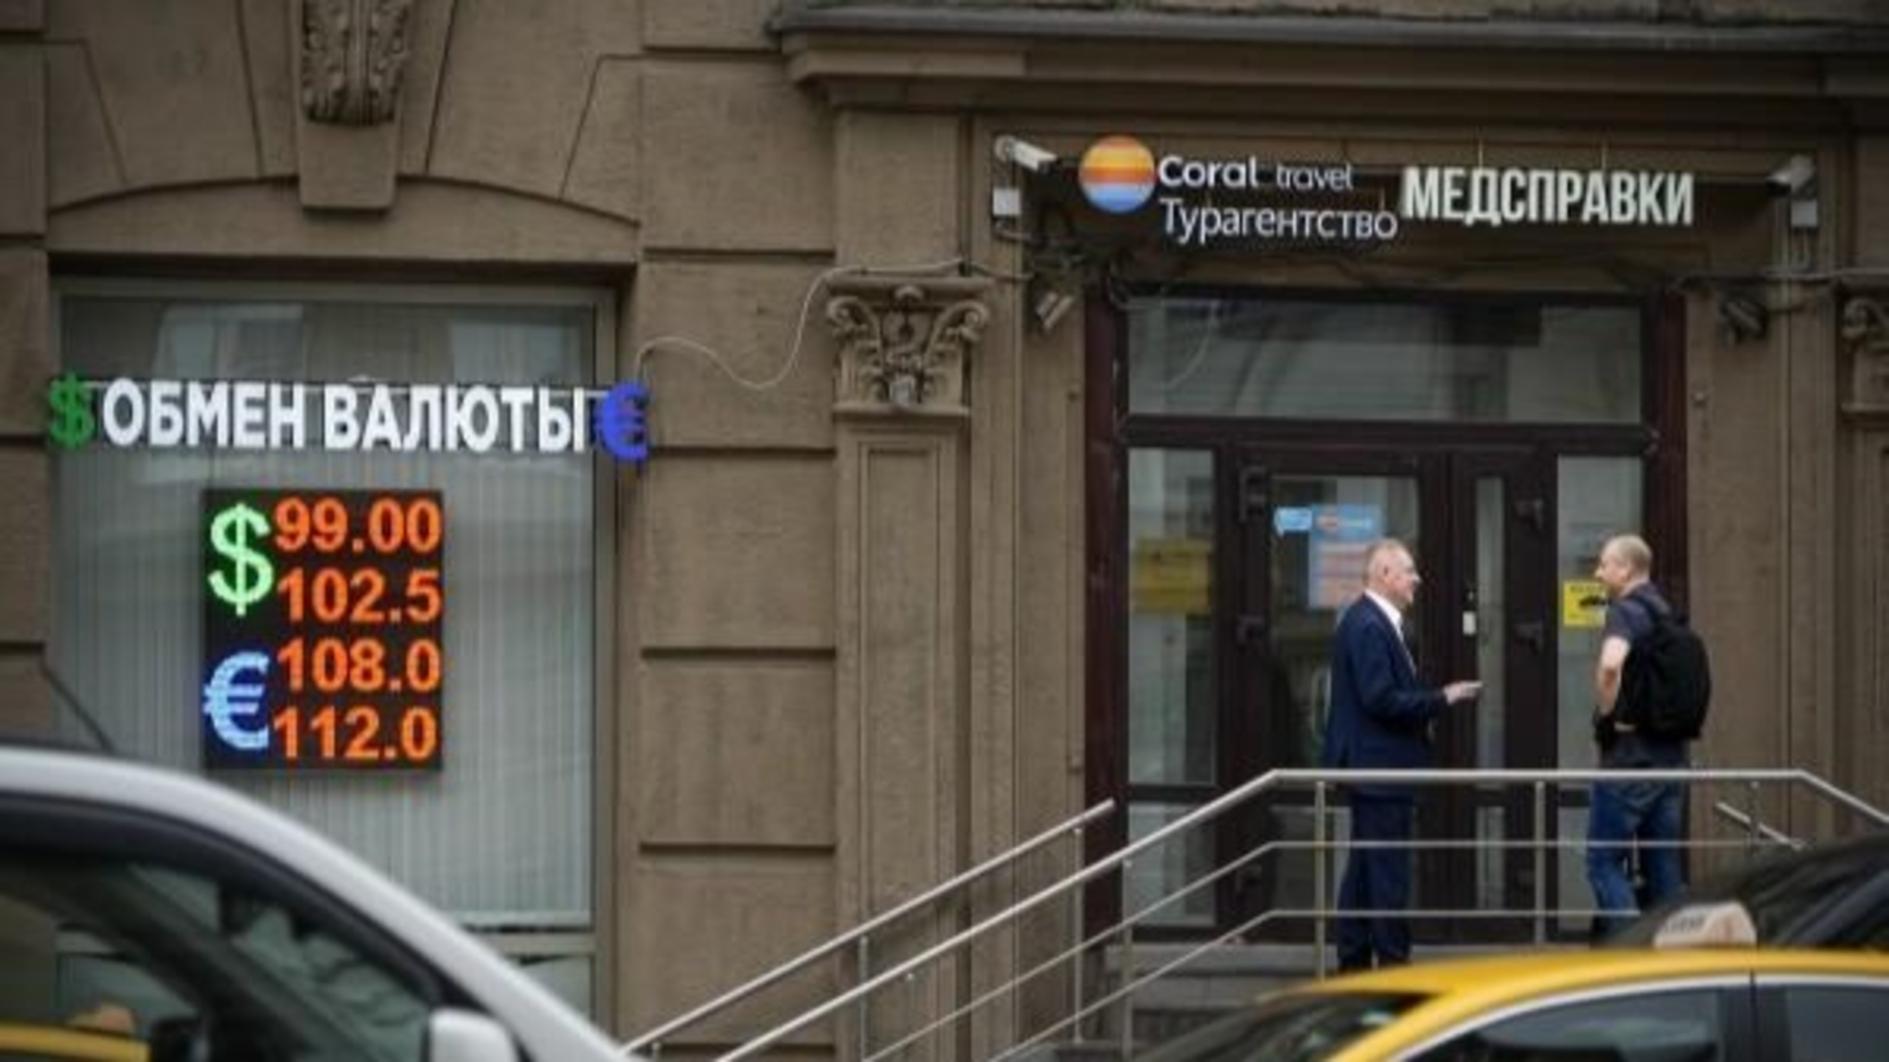 Türkiye, Rusland werkt aan problemen met bankoverschrijvingen: Kremlin